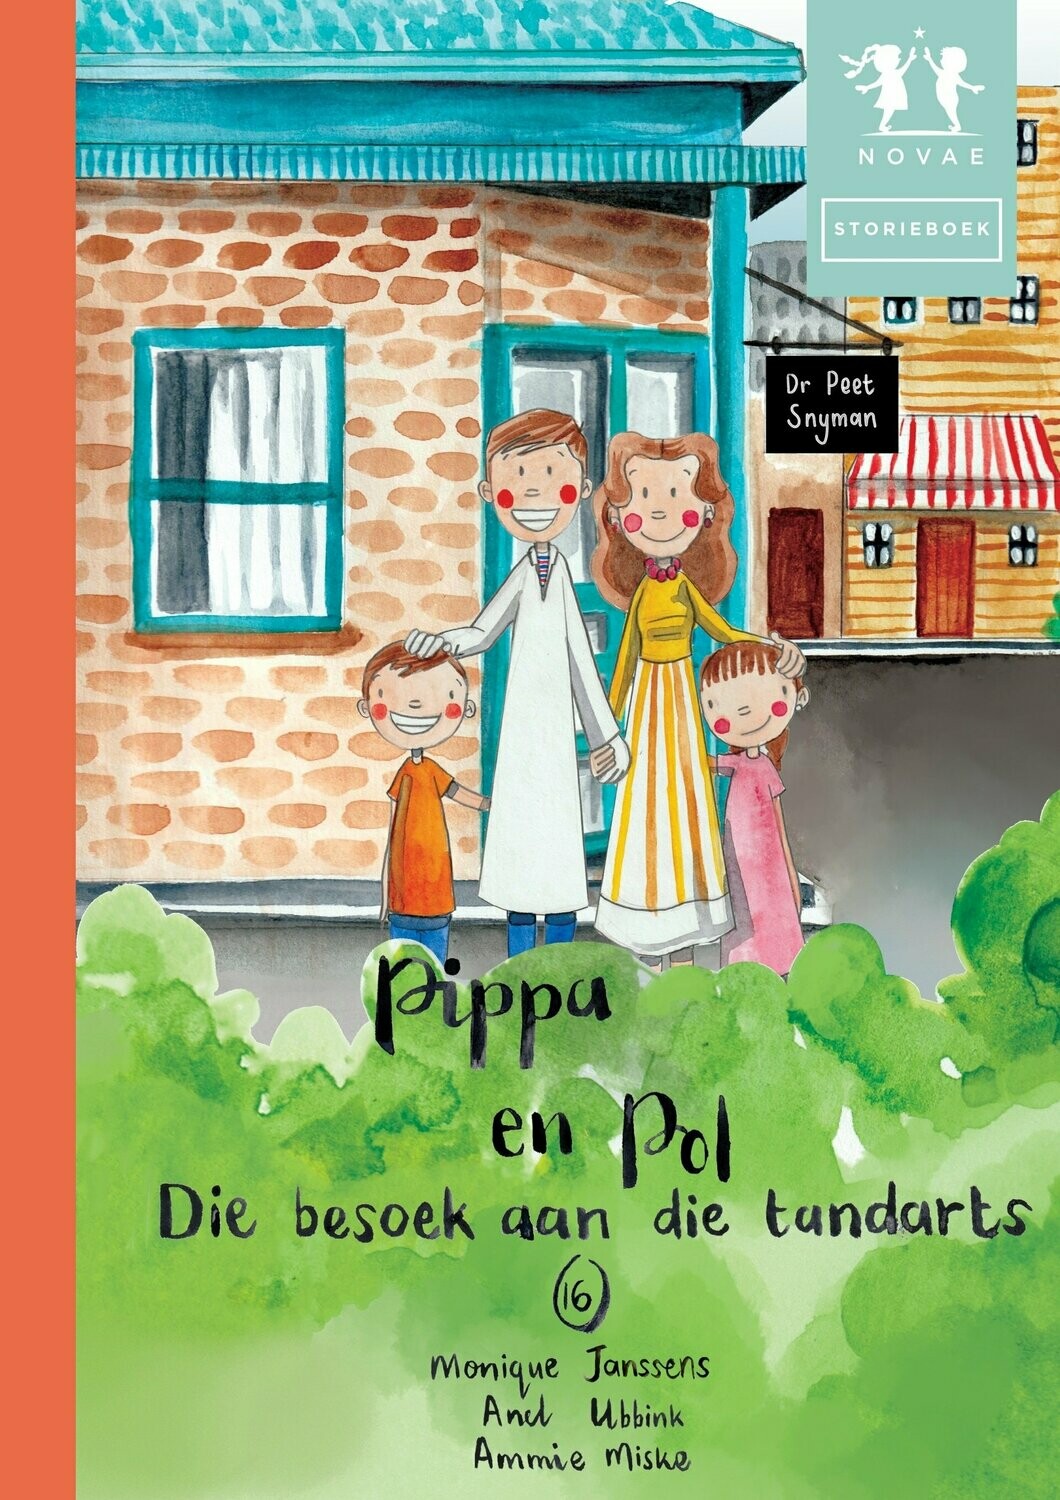 Pippa en Pol: Die besoek aan die tandarts - Storieboek